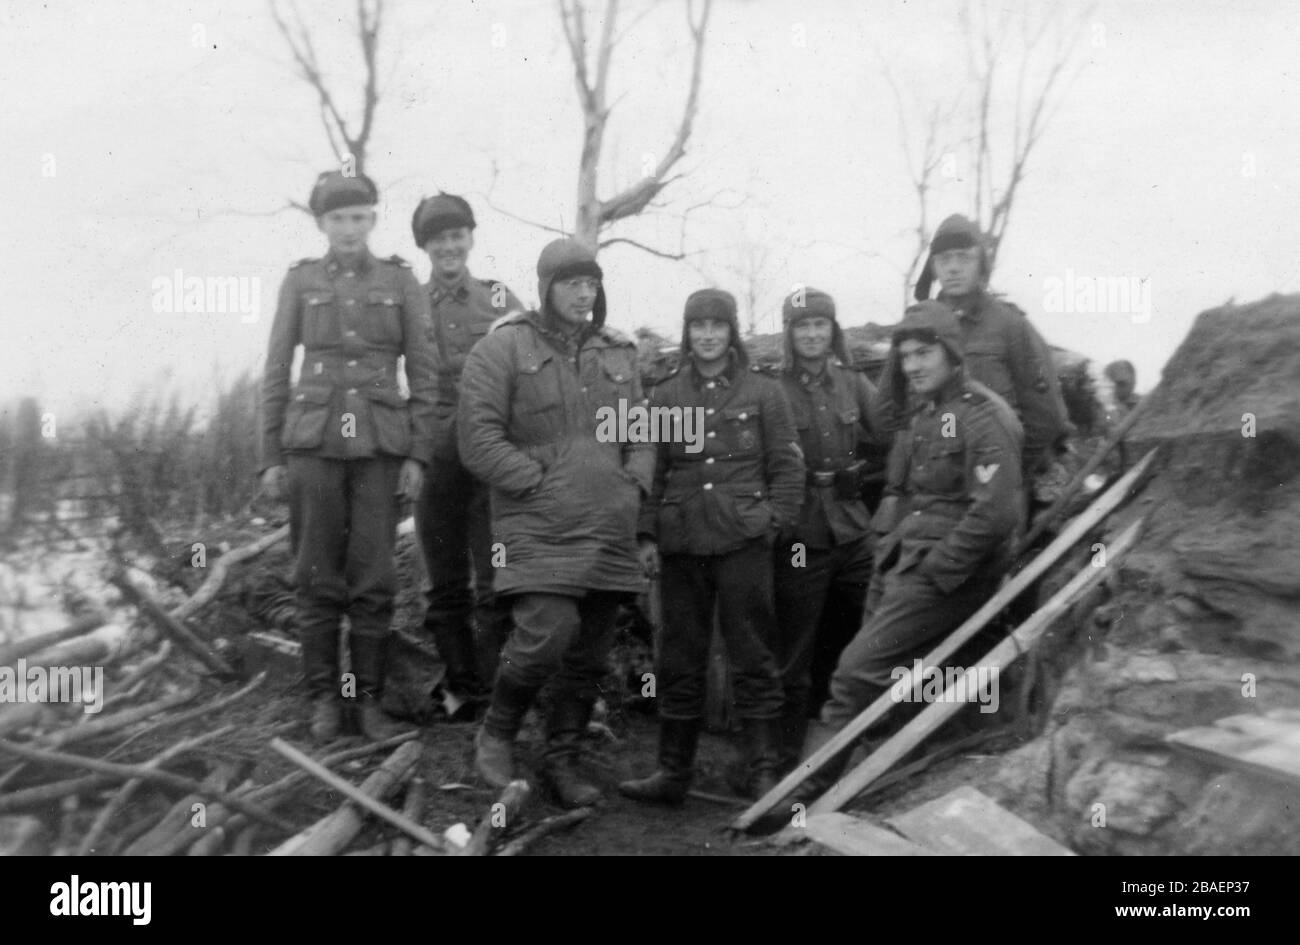 Historisches Foto des zweiten Weltkriegs/zweiten Weltkriegs über die deutsche Invasion - Waffen-SS-Trojer in der UdSSR (Weißrussland) - 1942 (Region Minsk), Bunker Stockfoto